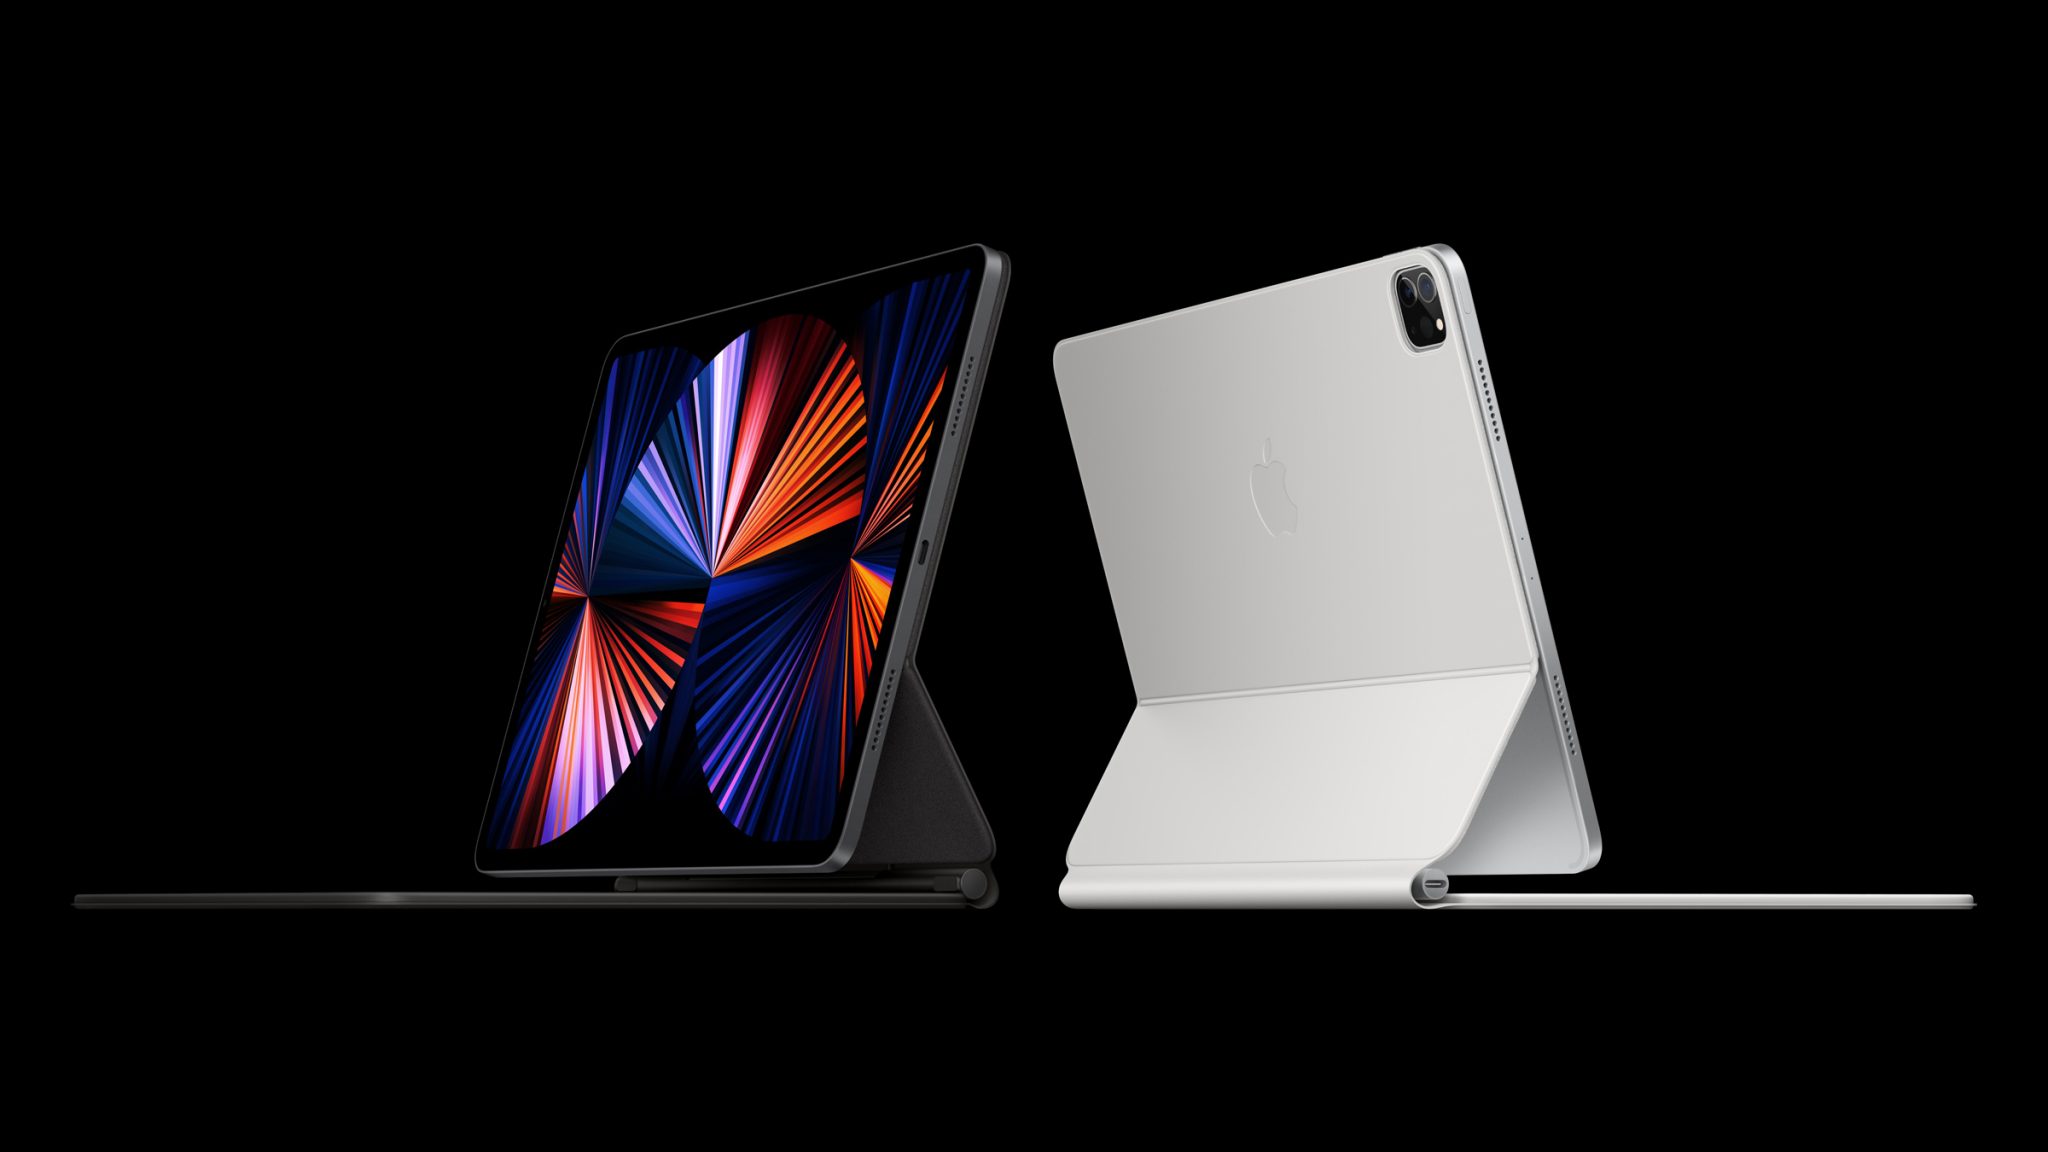 Sforum - Trang thông tin công nghệ mới nhất 2021-ipad-pro-vs-2020-ipad-pro-4 iPad Pro 2021 có gì khác so với iPad Pro 2020, nên mua phiên bản nào? 